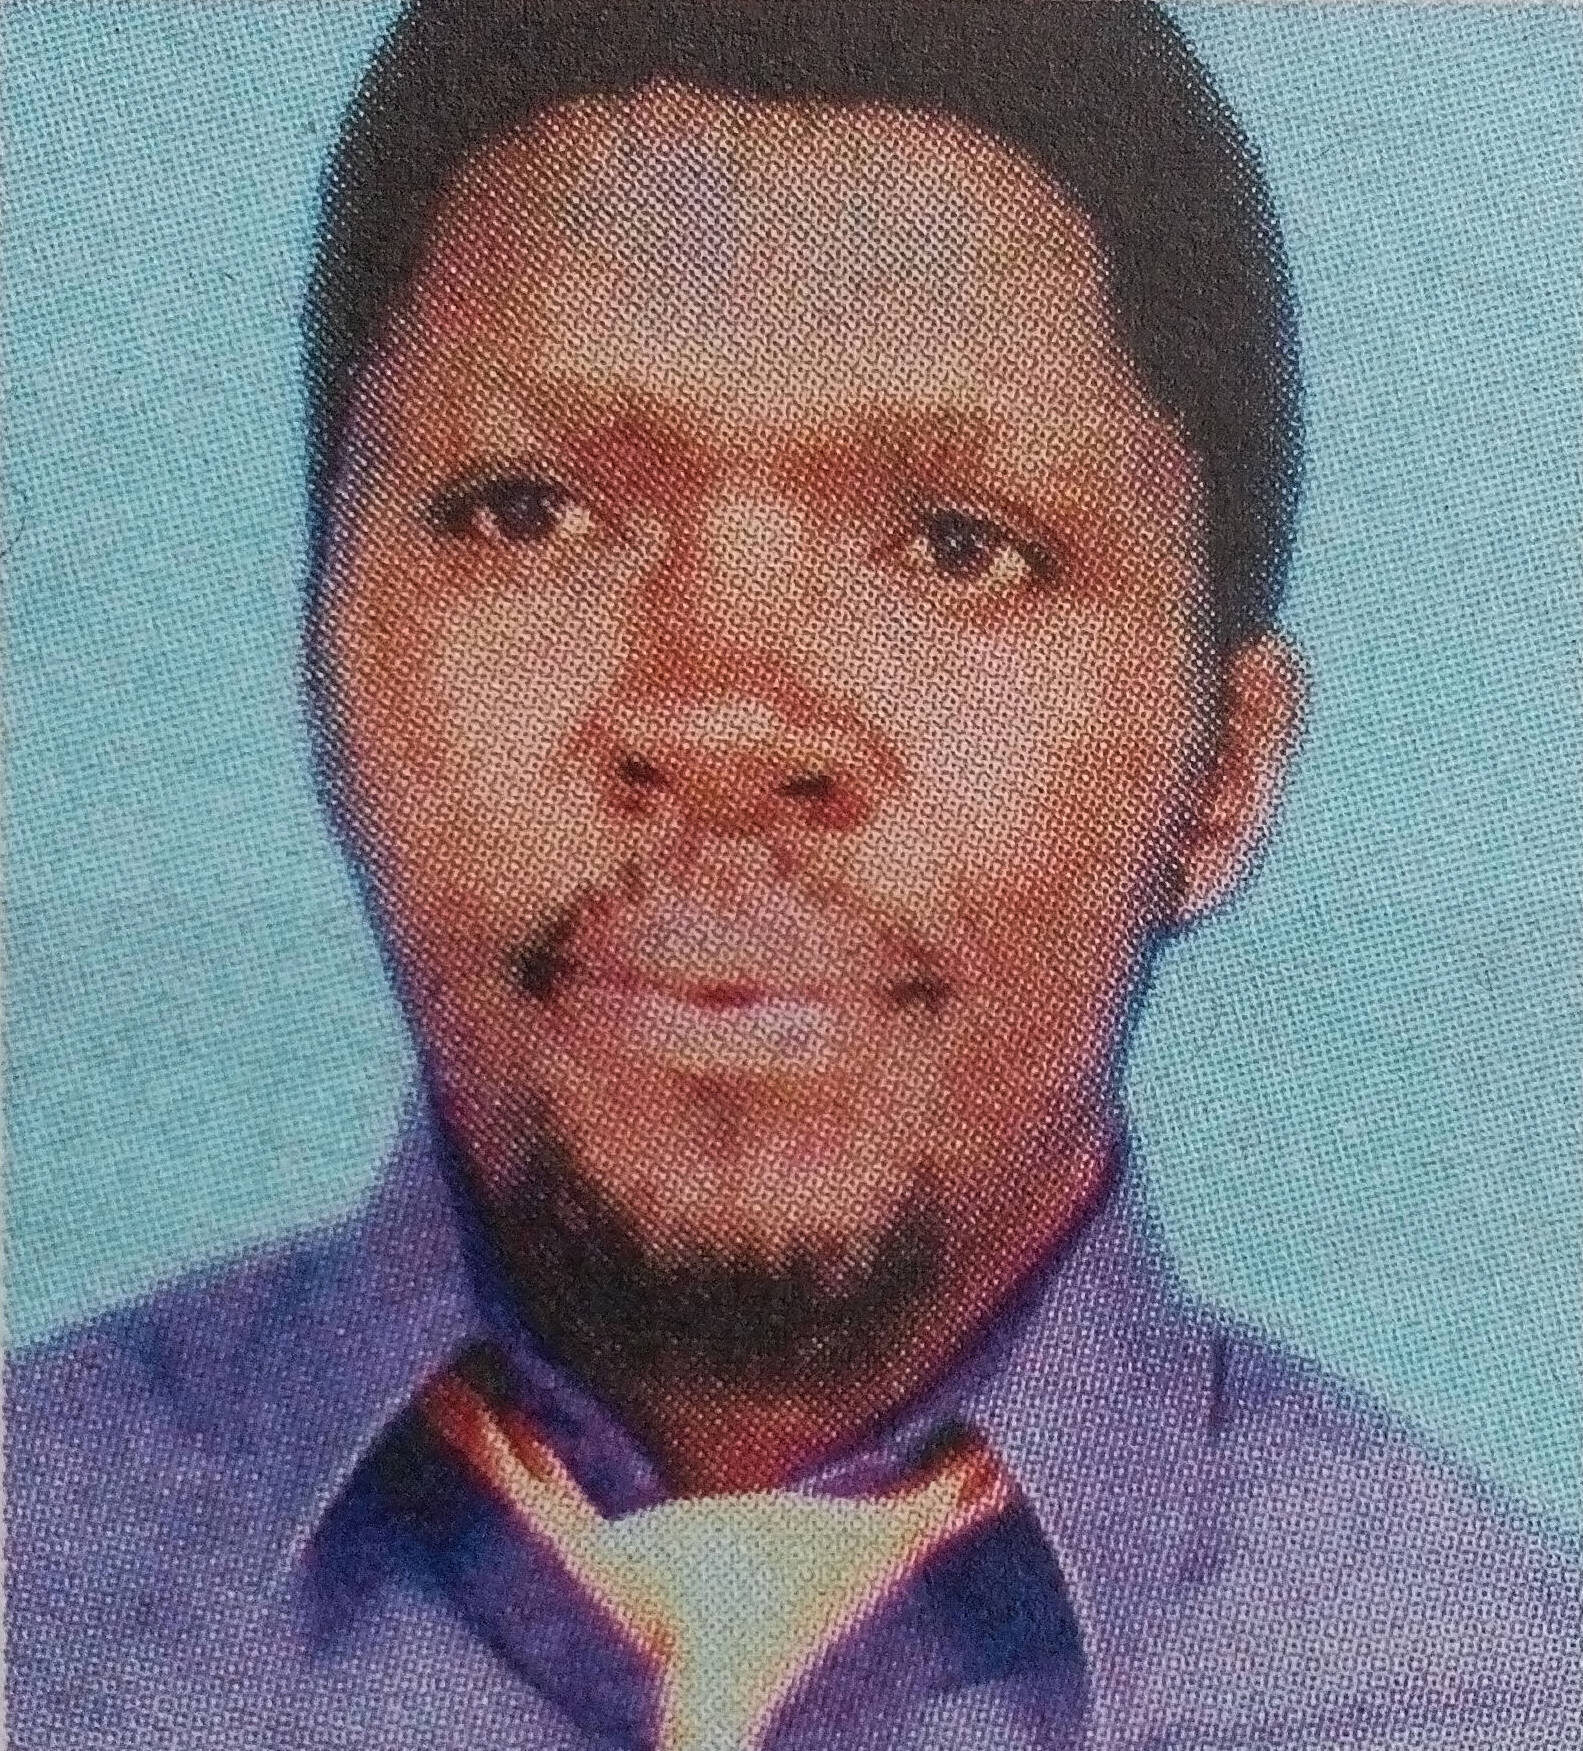 Obituary Image of Josphat Wafula Gamba,Sunrise 1.04.1973 Sunset 18.03.2017